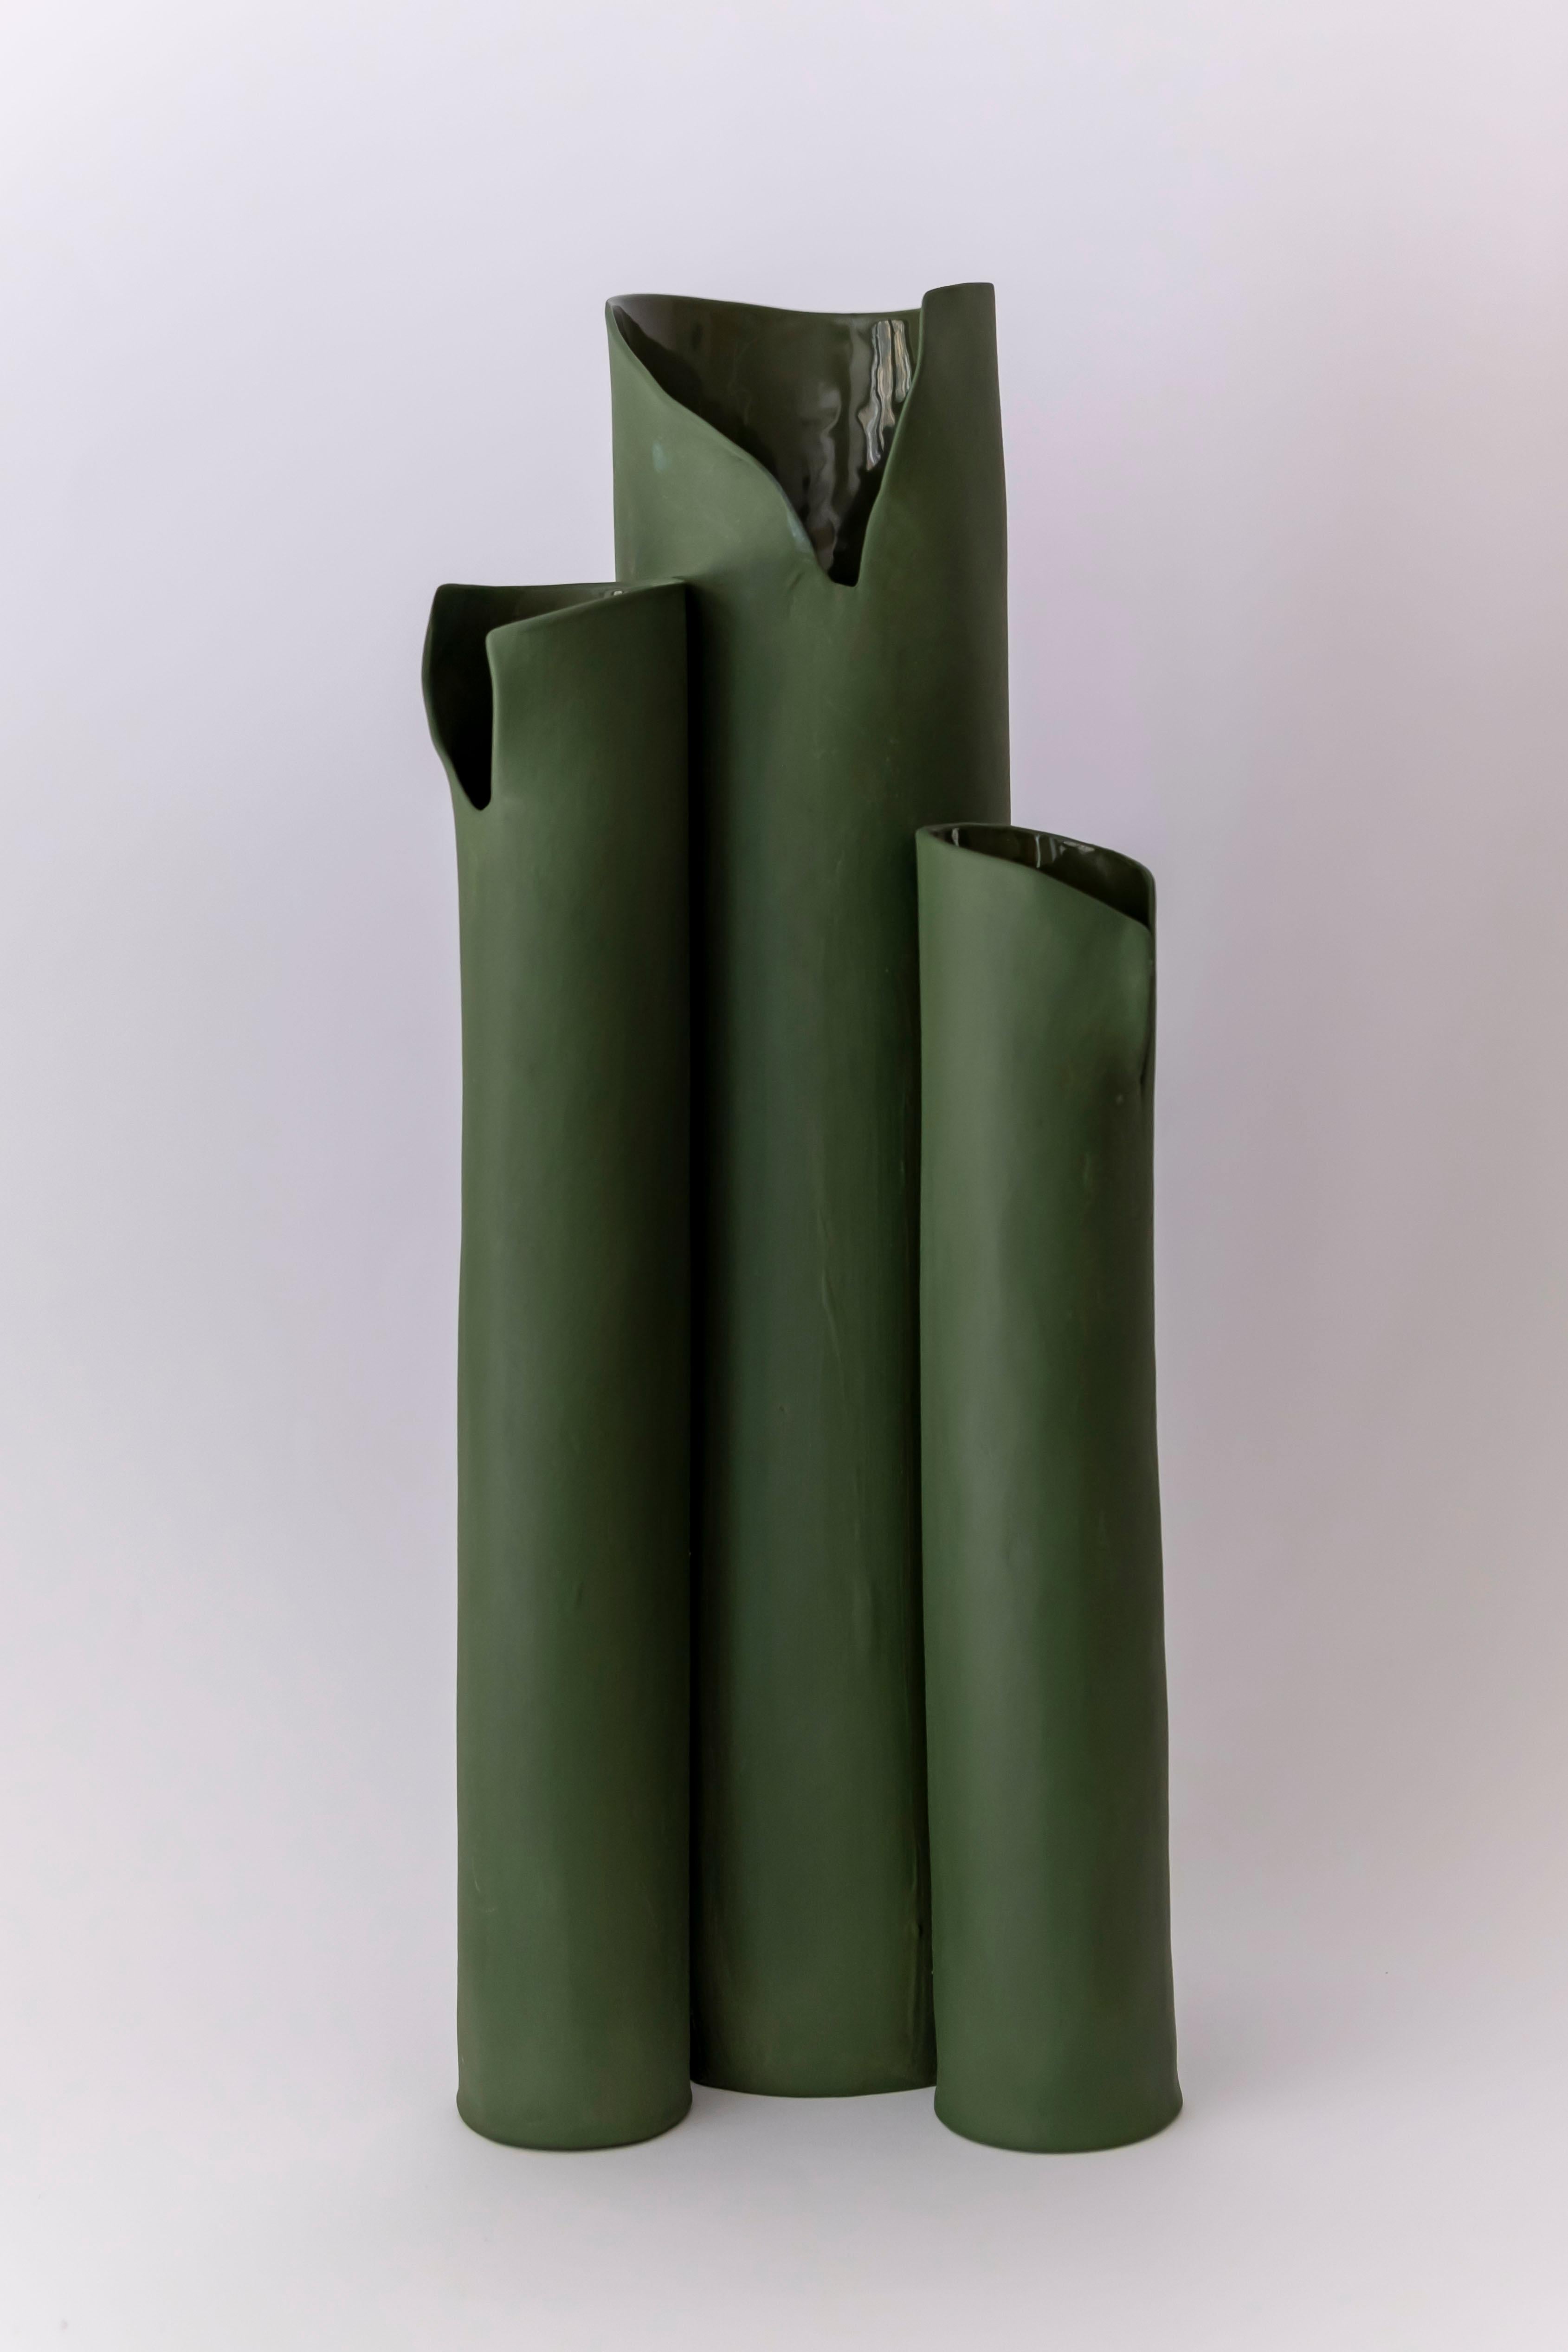 Olivgrüne Trio-Vase von Biancodichina
Einzigartiges Stück.
Abmessungen: T 16 x B 25 x H 37 cm. 
MATERIALIEN: Limoges-Porzellan. Innen glasiert und glänzend, außen Biskuit und Seidenglanz.

Diese Vasen werden vollständig von Hand in einer